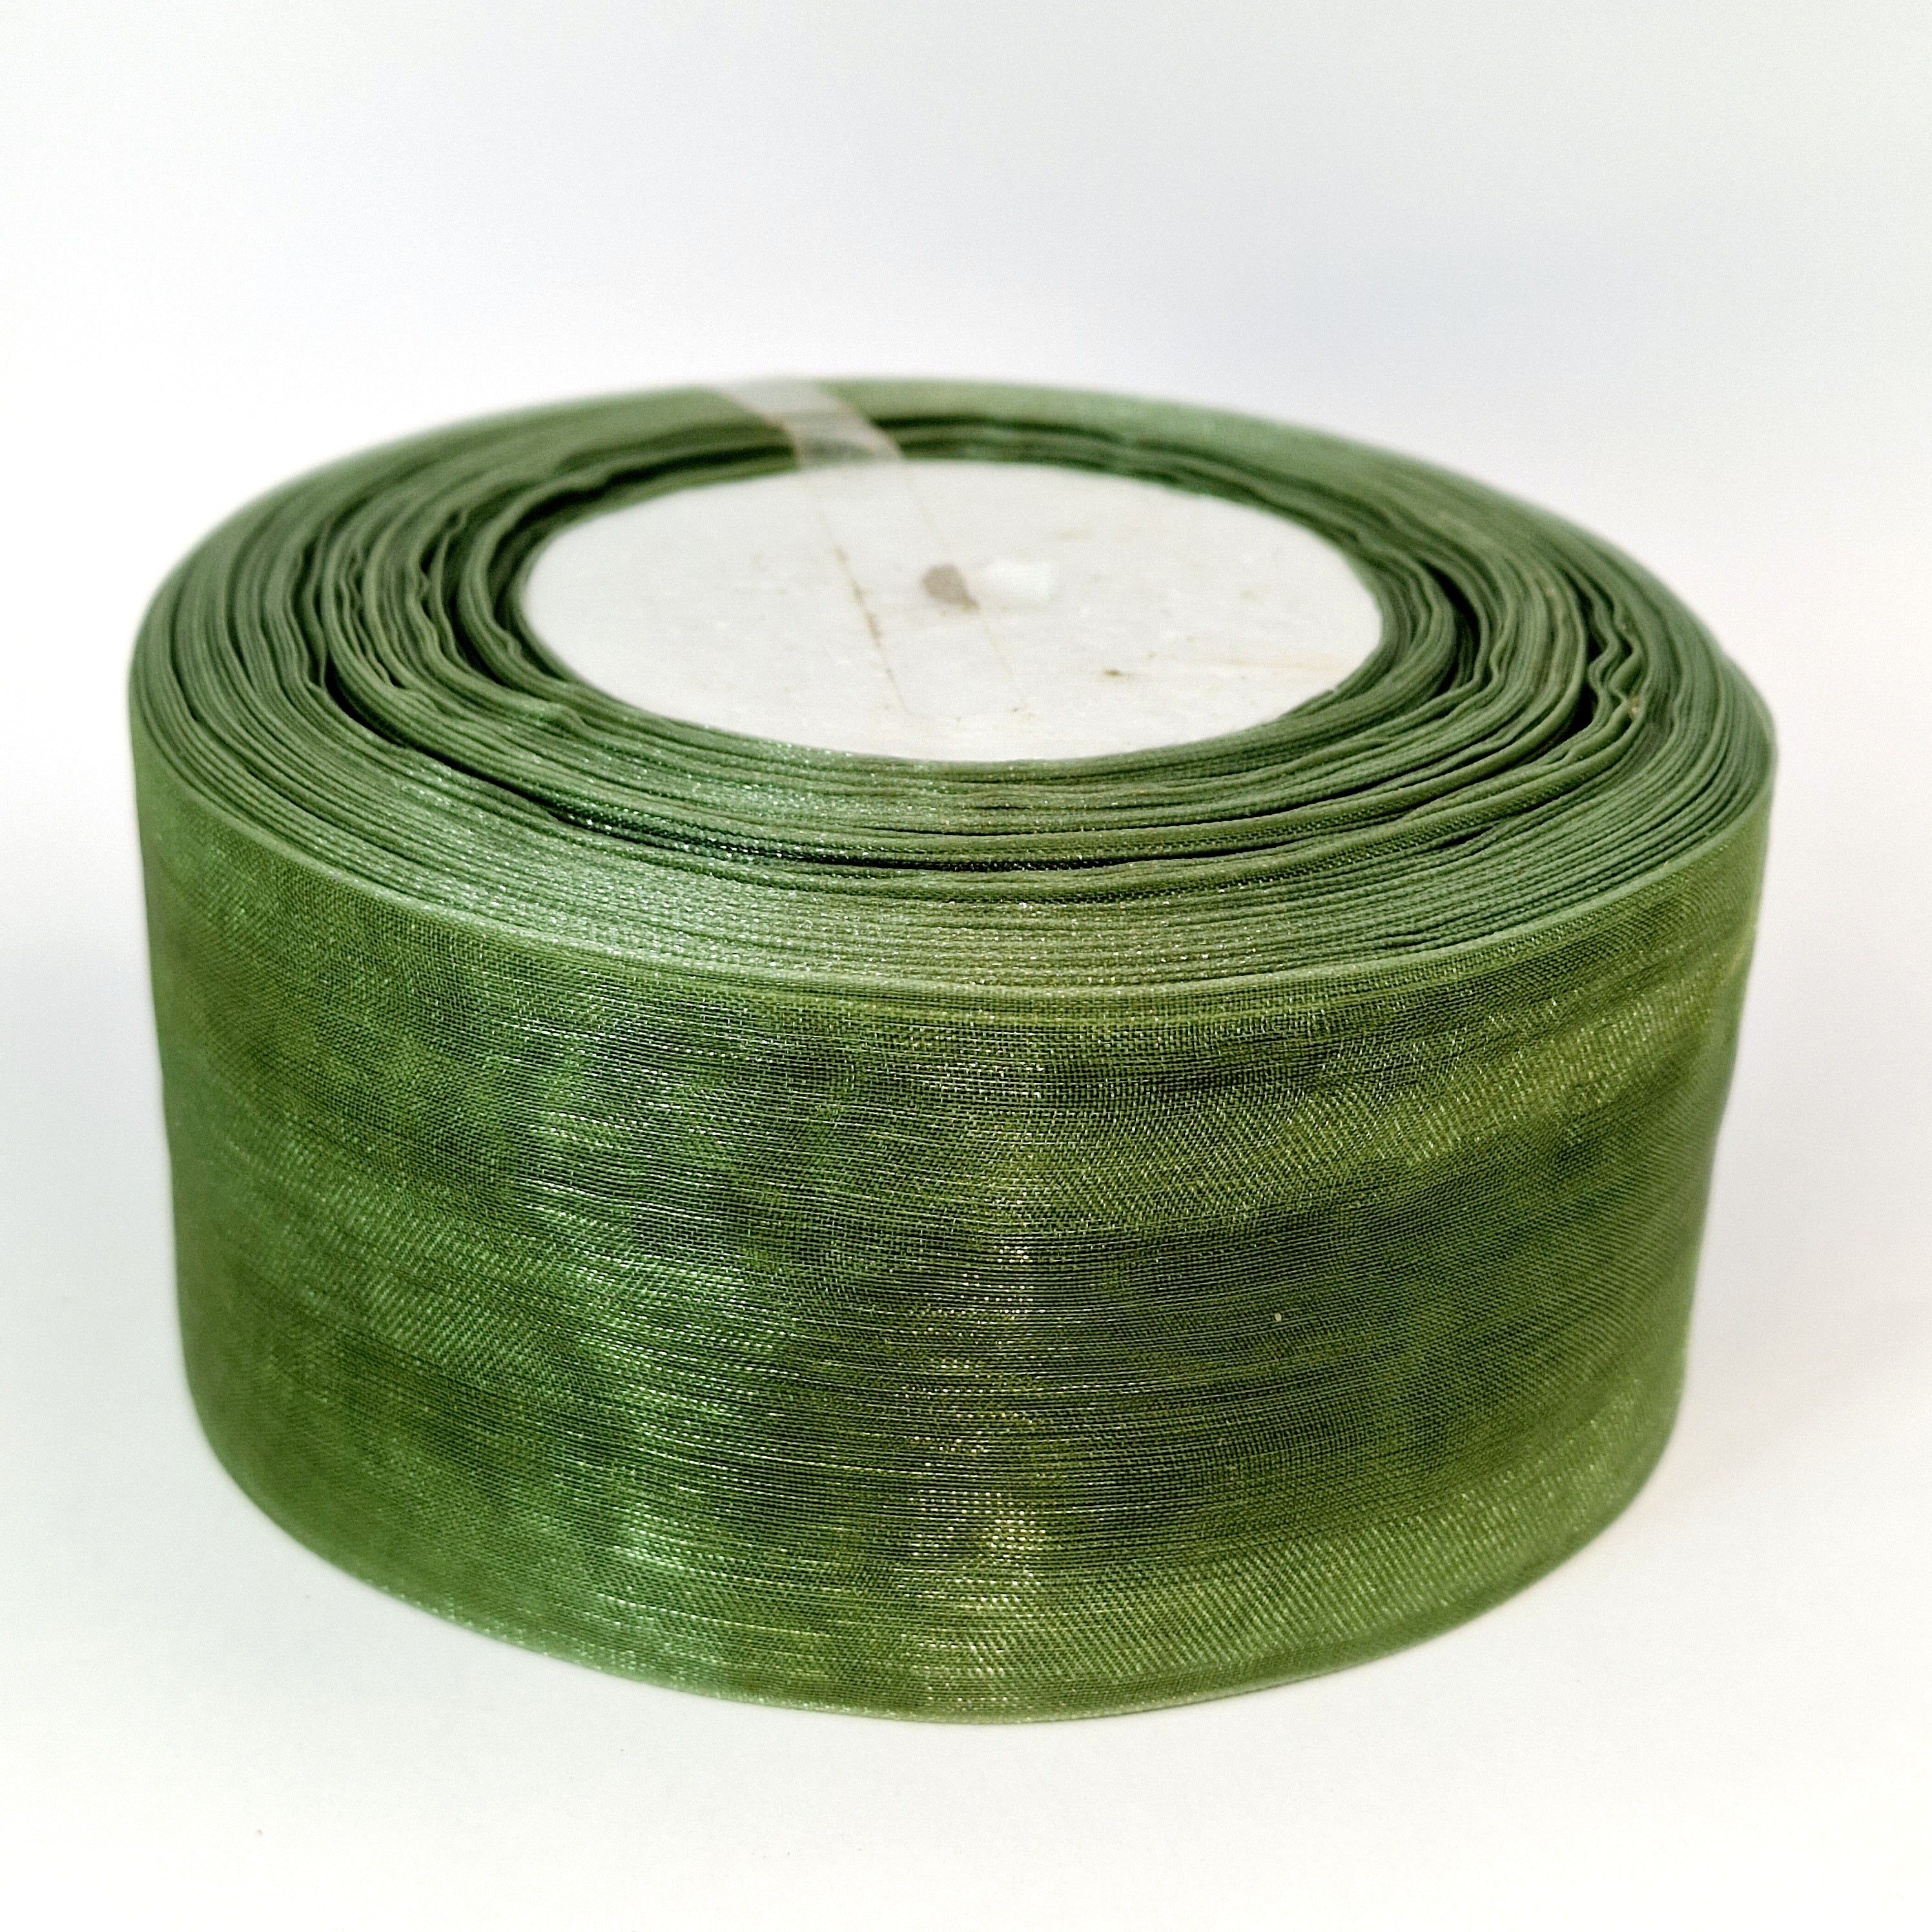 MajorCrafts 40mm 45metres Olive Green Sheer Organza Fabric Ribbon Roll R1061